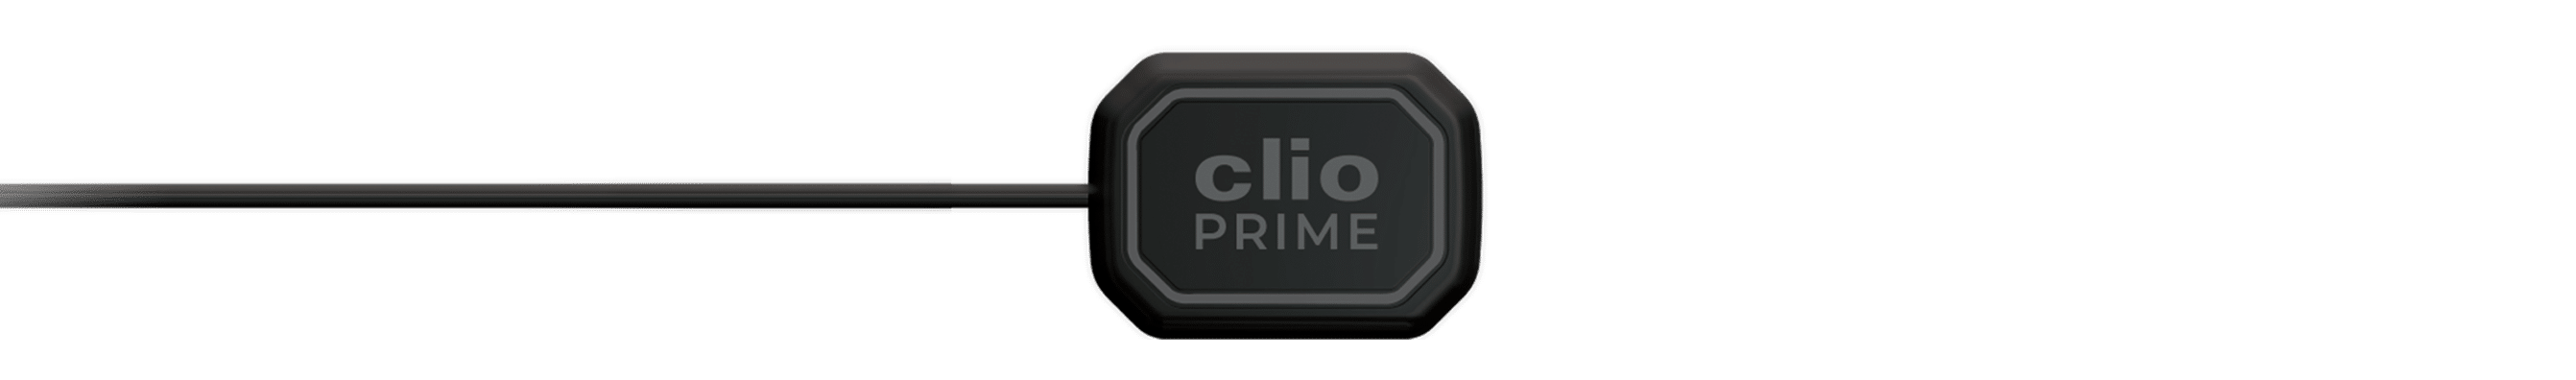 Clio Prime